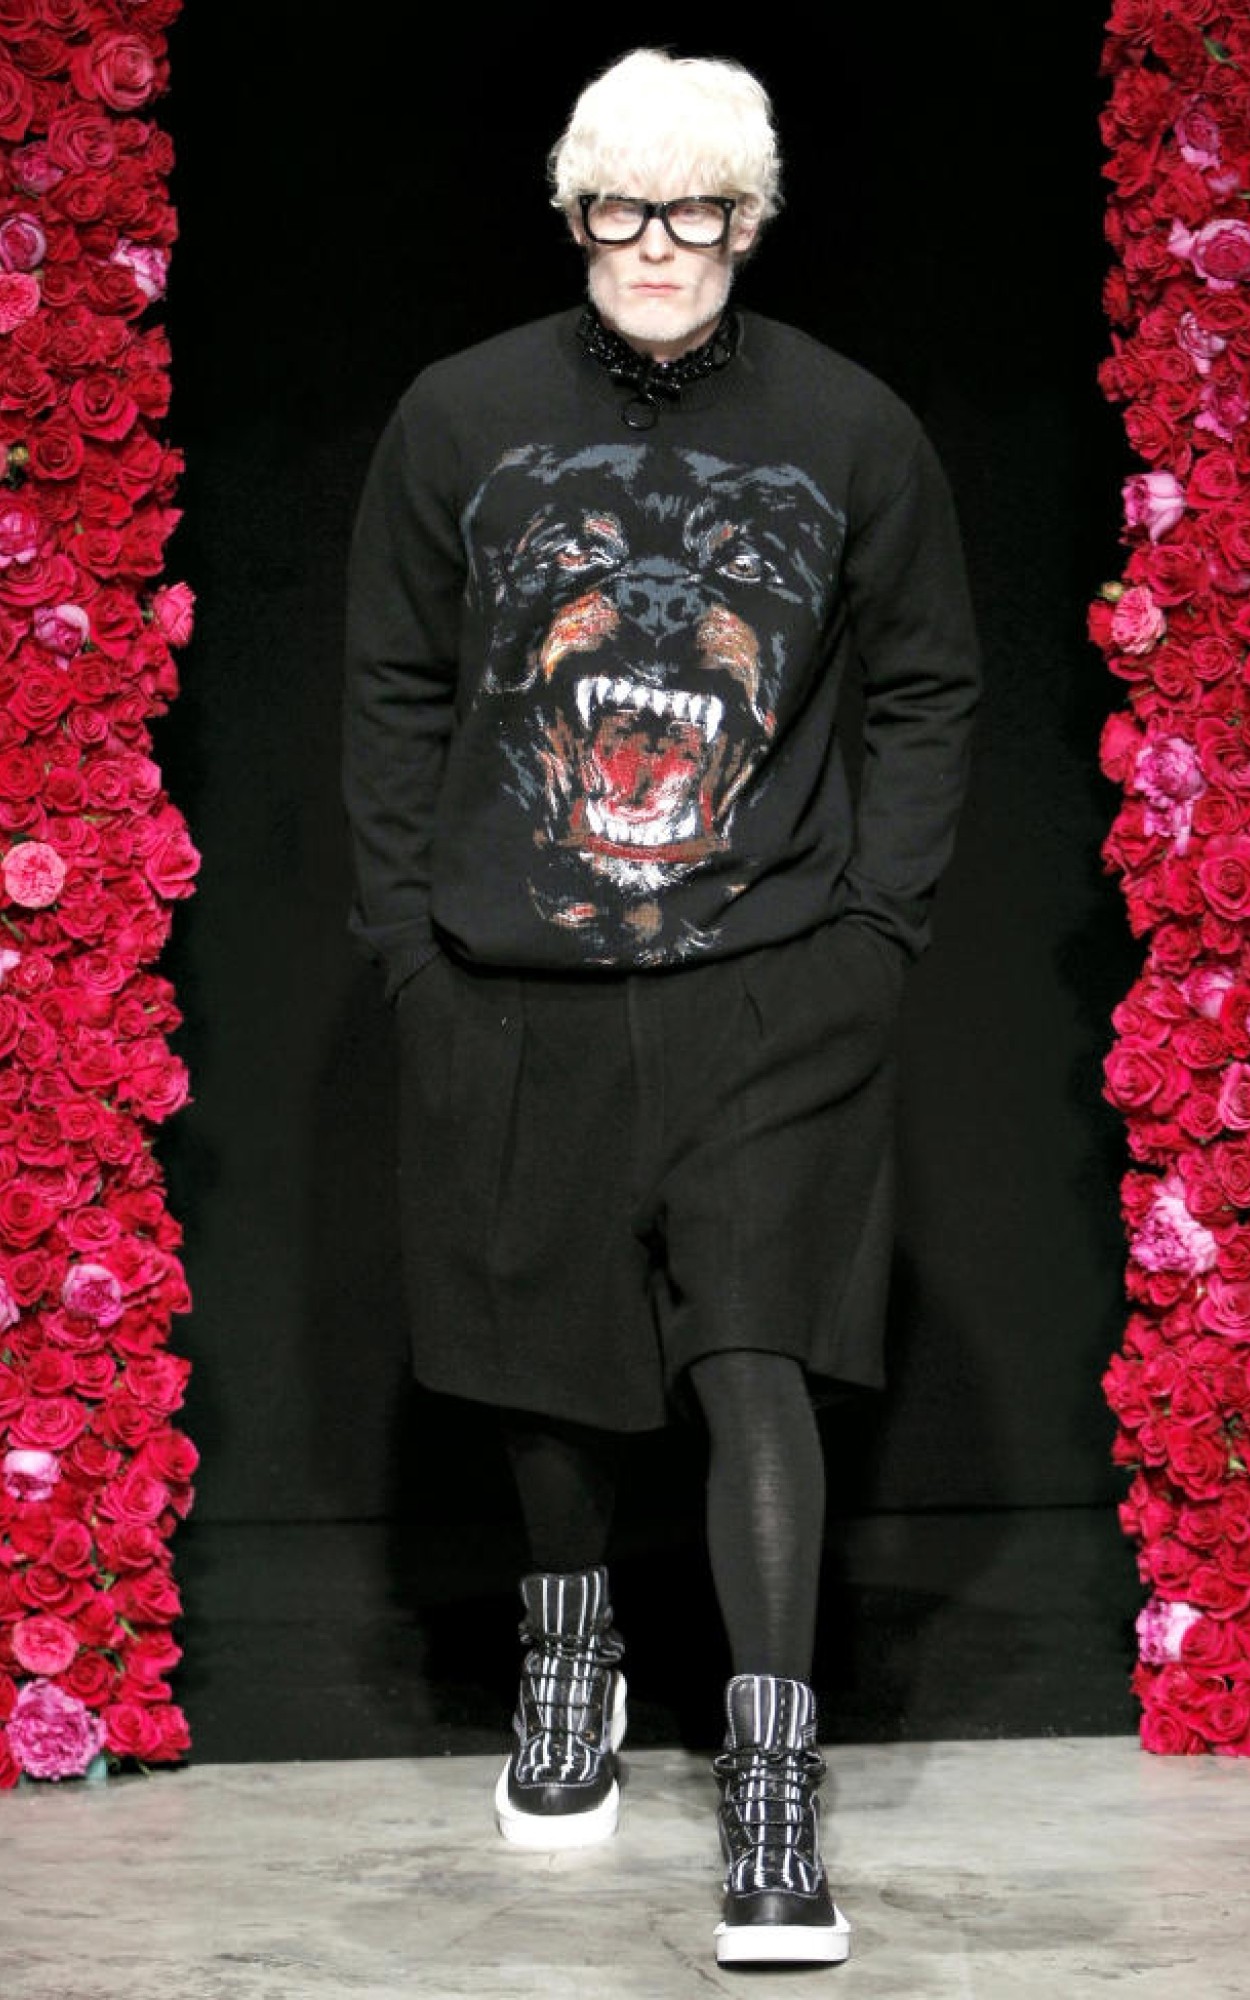  Ротвейлеры, шорты и мужские колготки: показ Givenchy осень-зима 2011